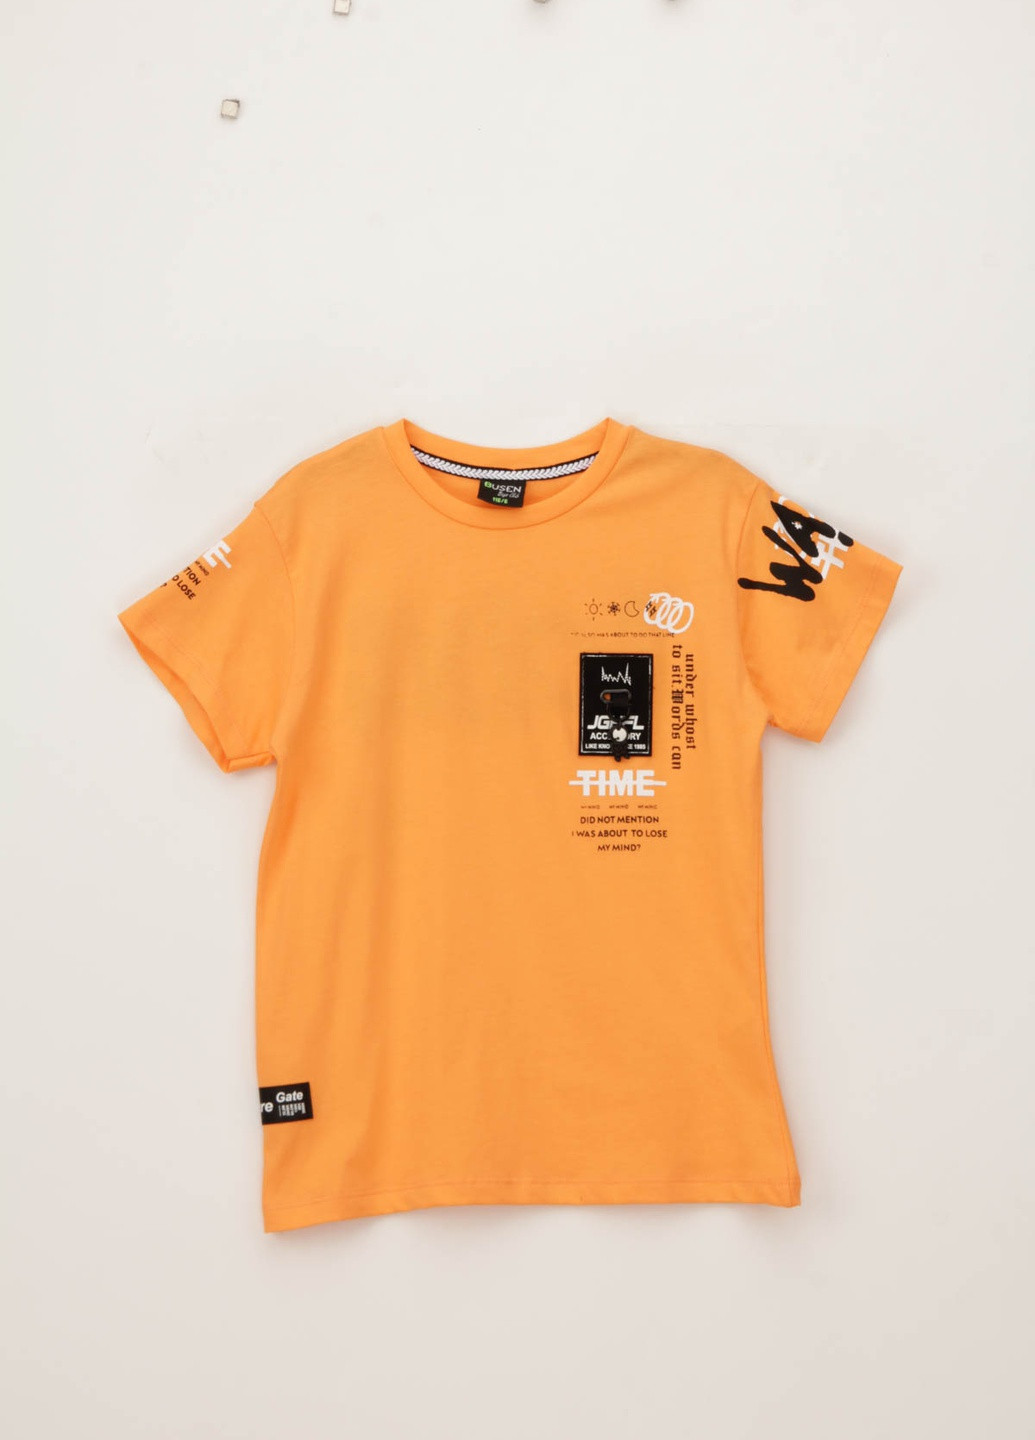 Оранжевая летняя футболка Yesmina